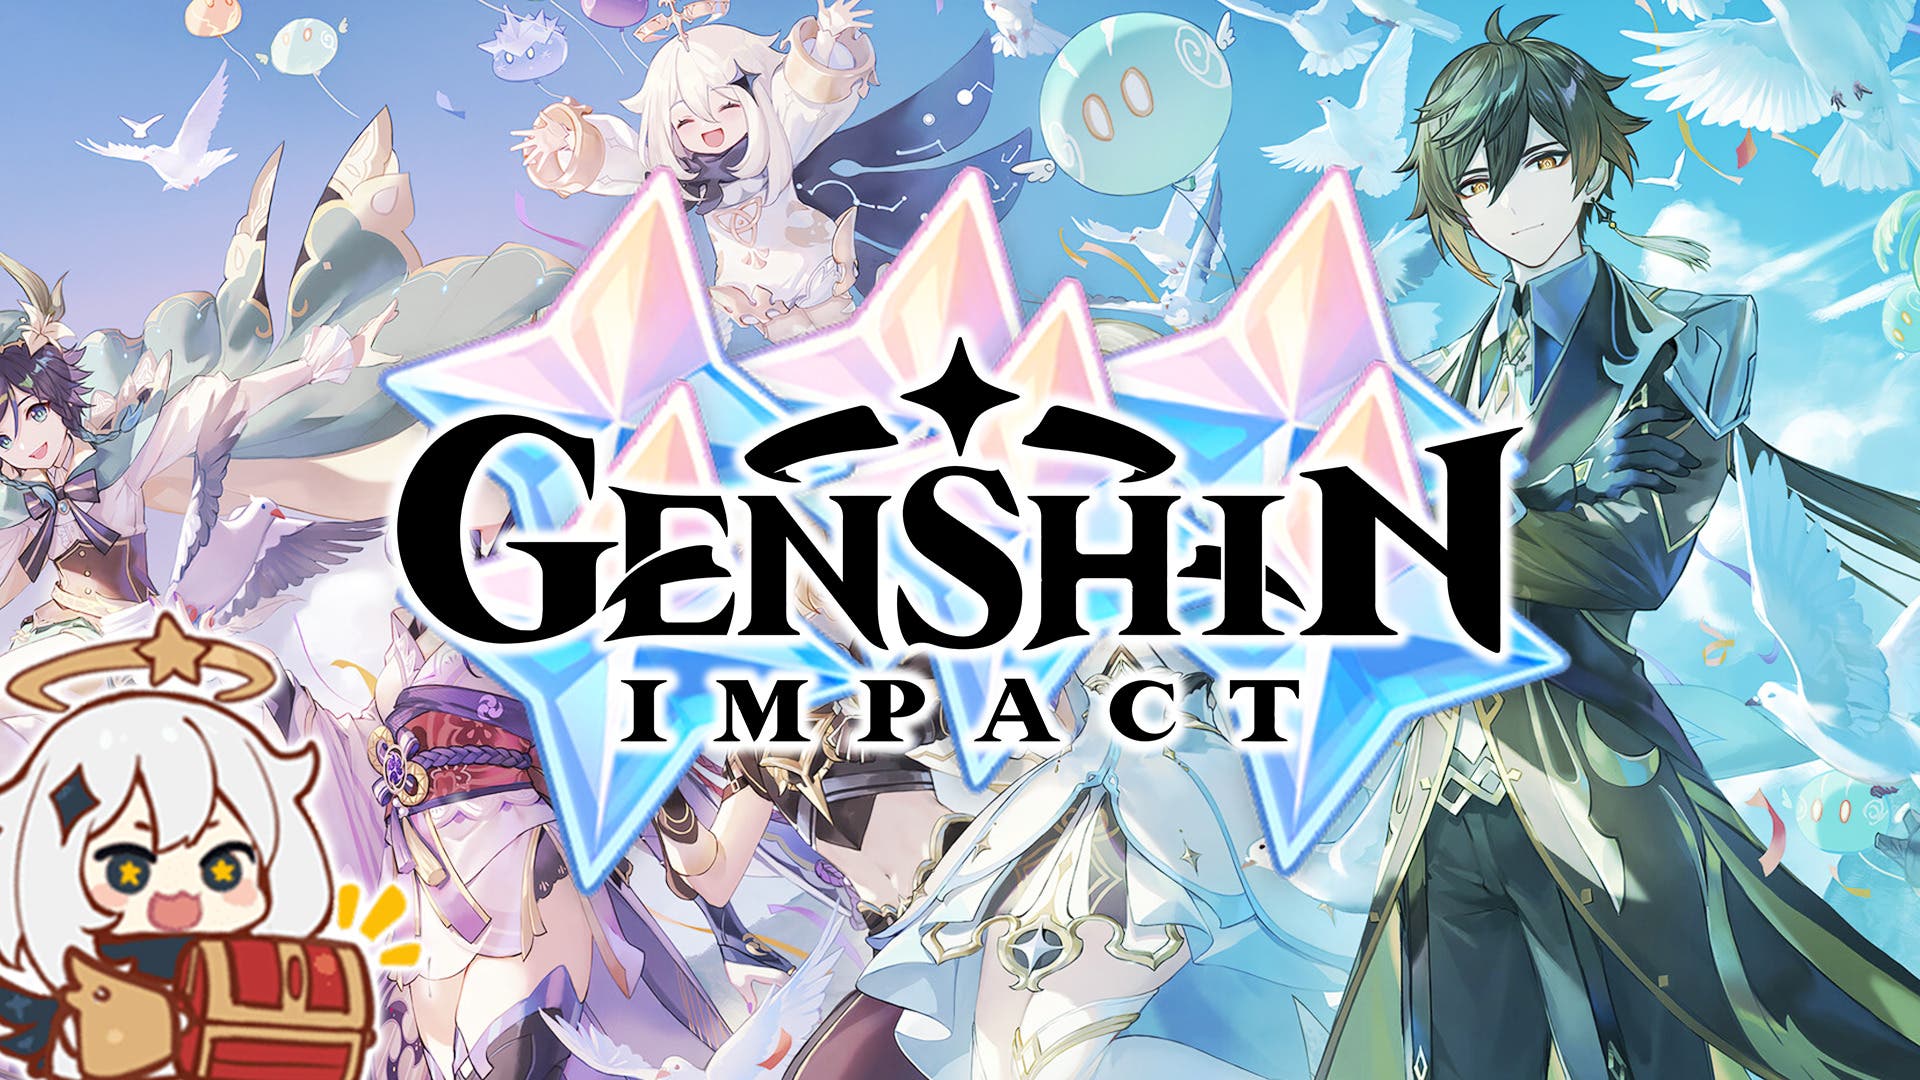 Genshin Impact lanza dos nuevos códigos con Protogemas gratis por el  estreno de la v4.2 - Vandal